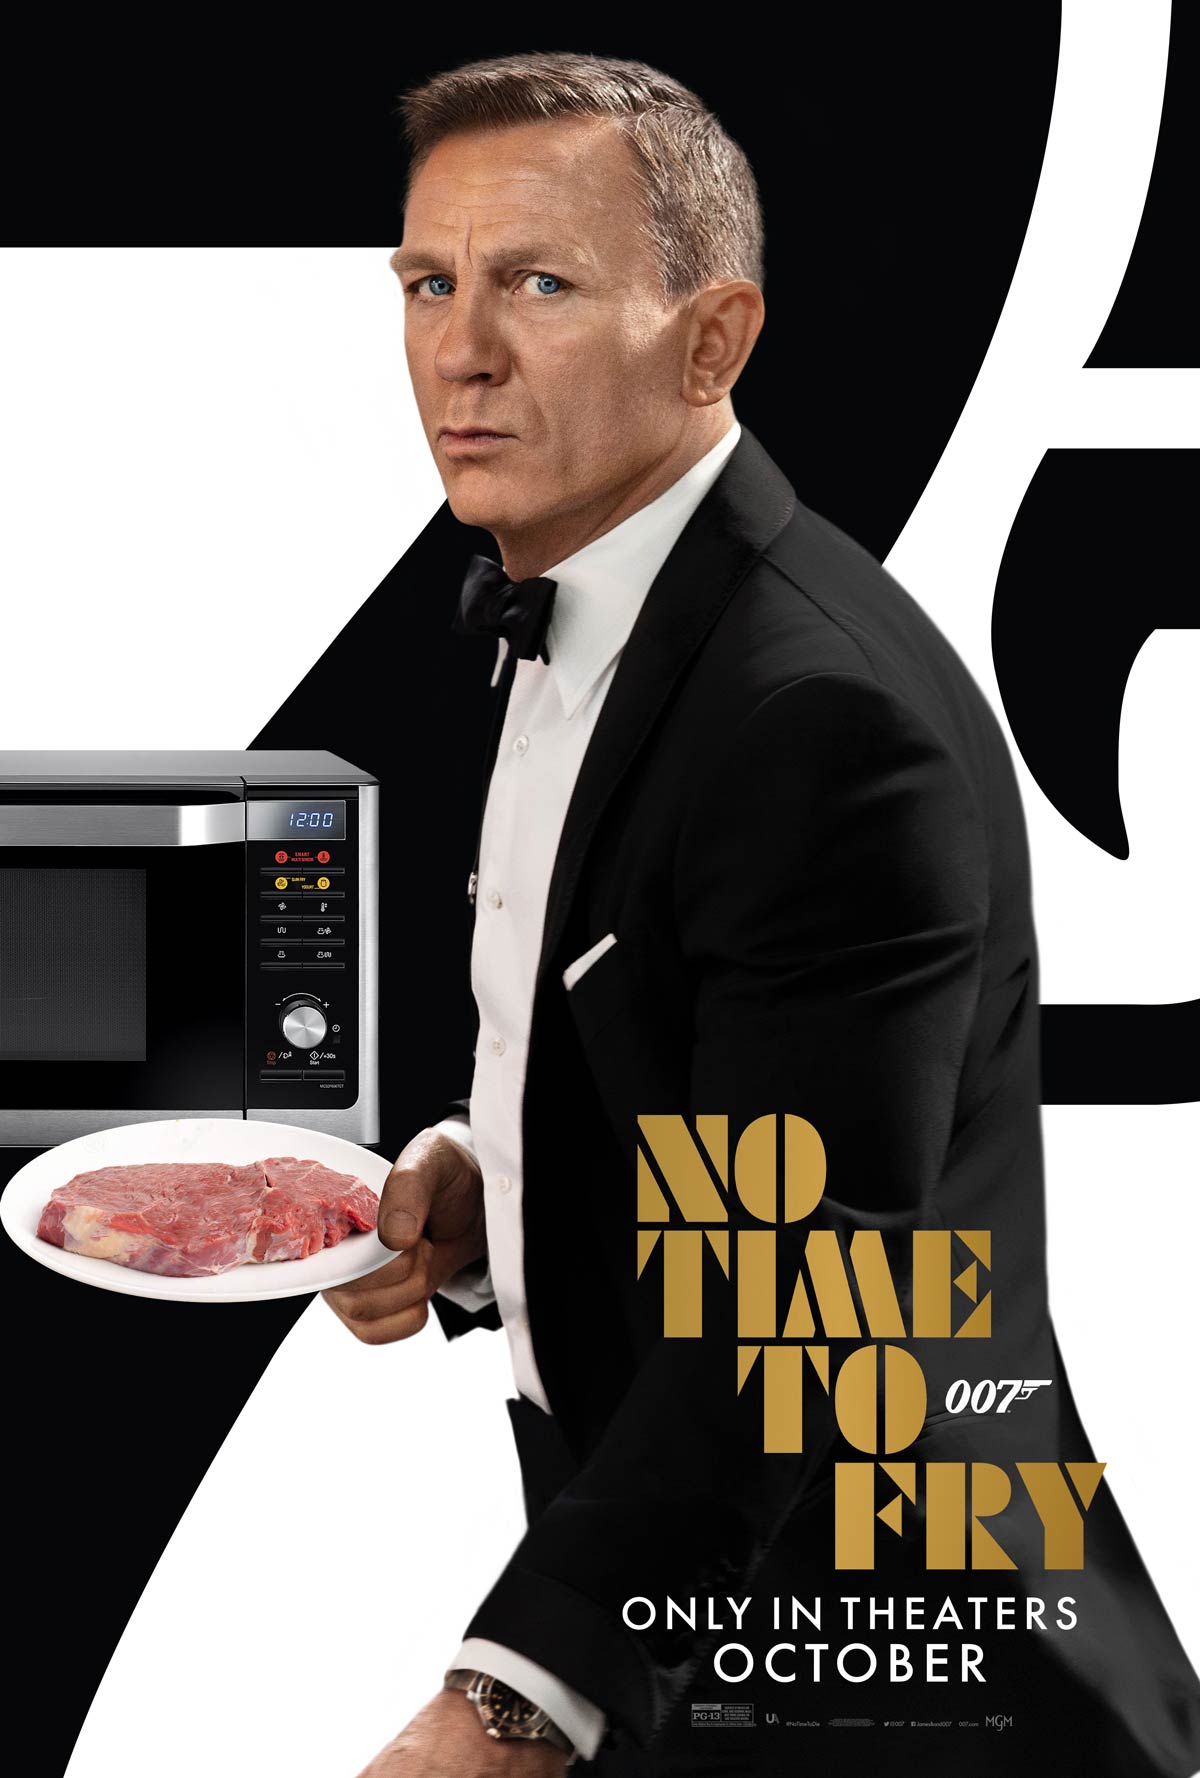 No, Mr. Bond. I expect you to fry!